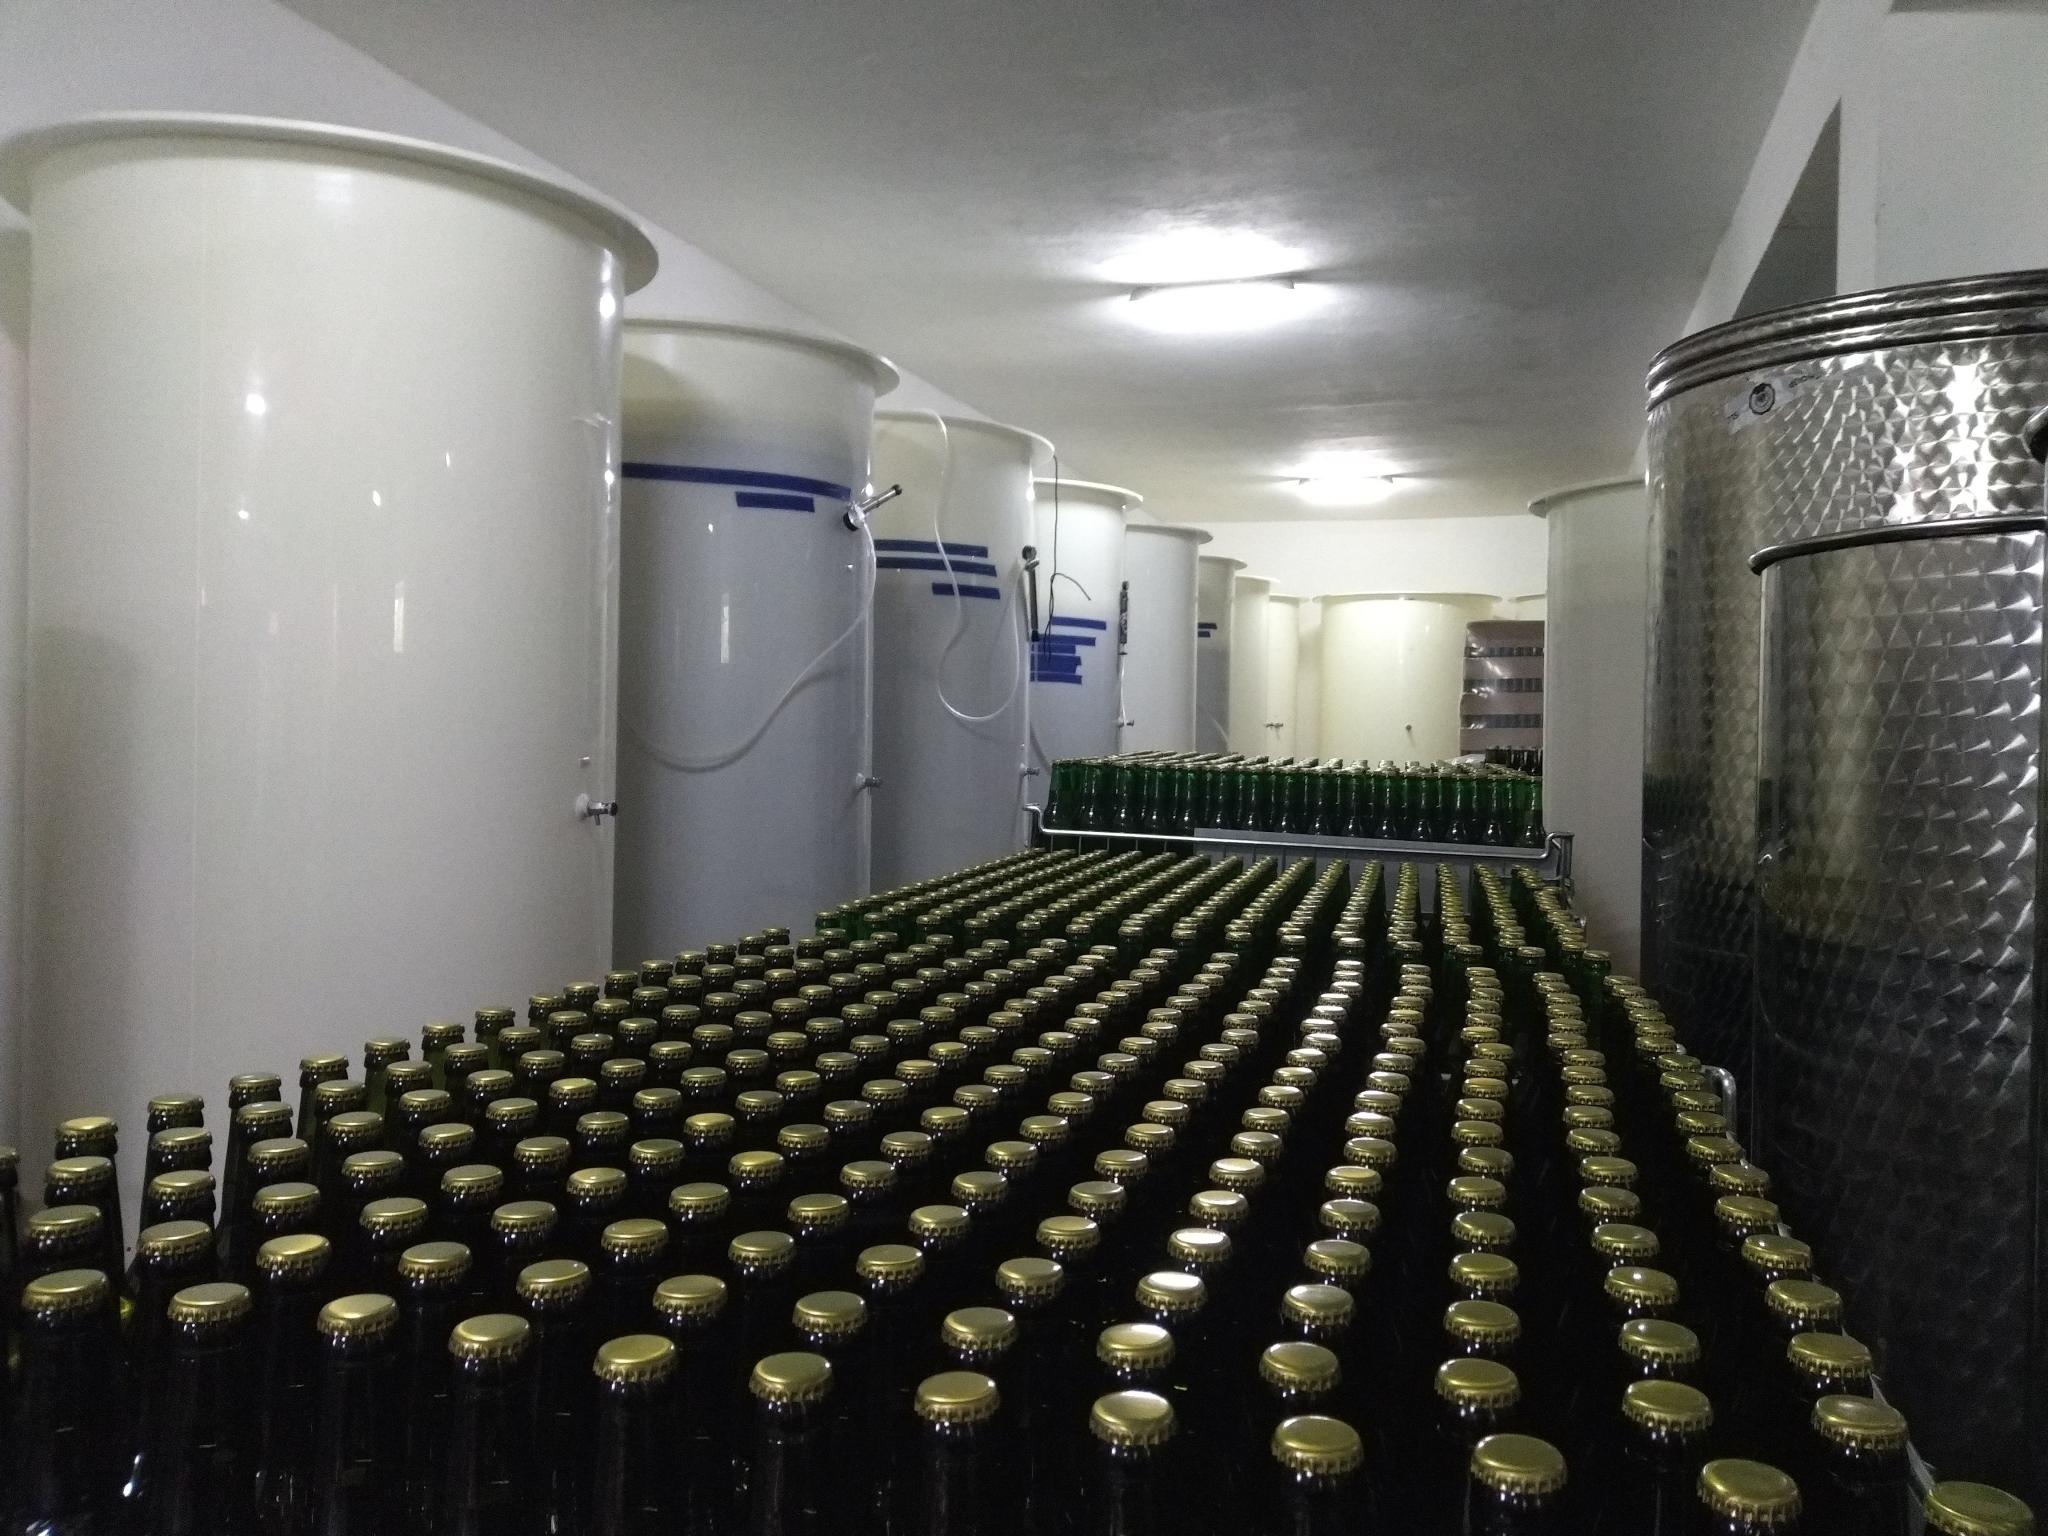 W centrum kadru rżędy butelek, po lewej i prawej stronie tanki fermentacyjne do cydrów.